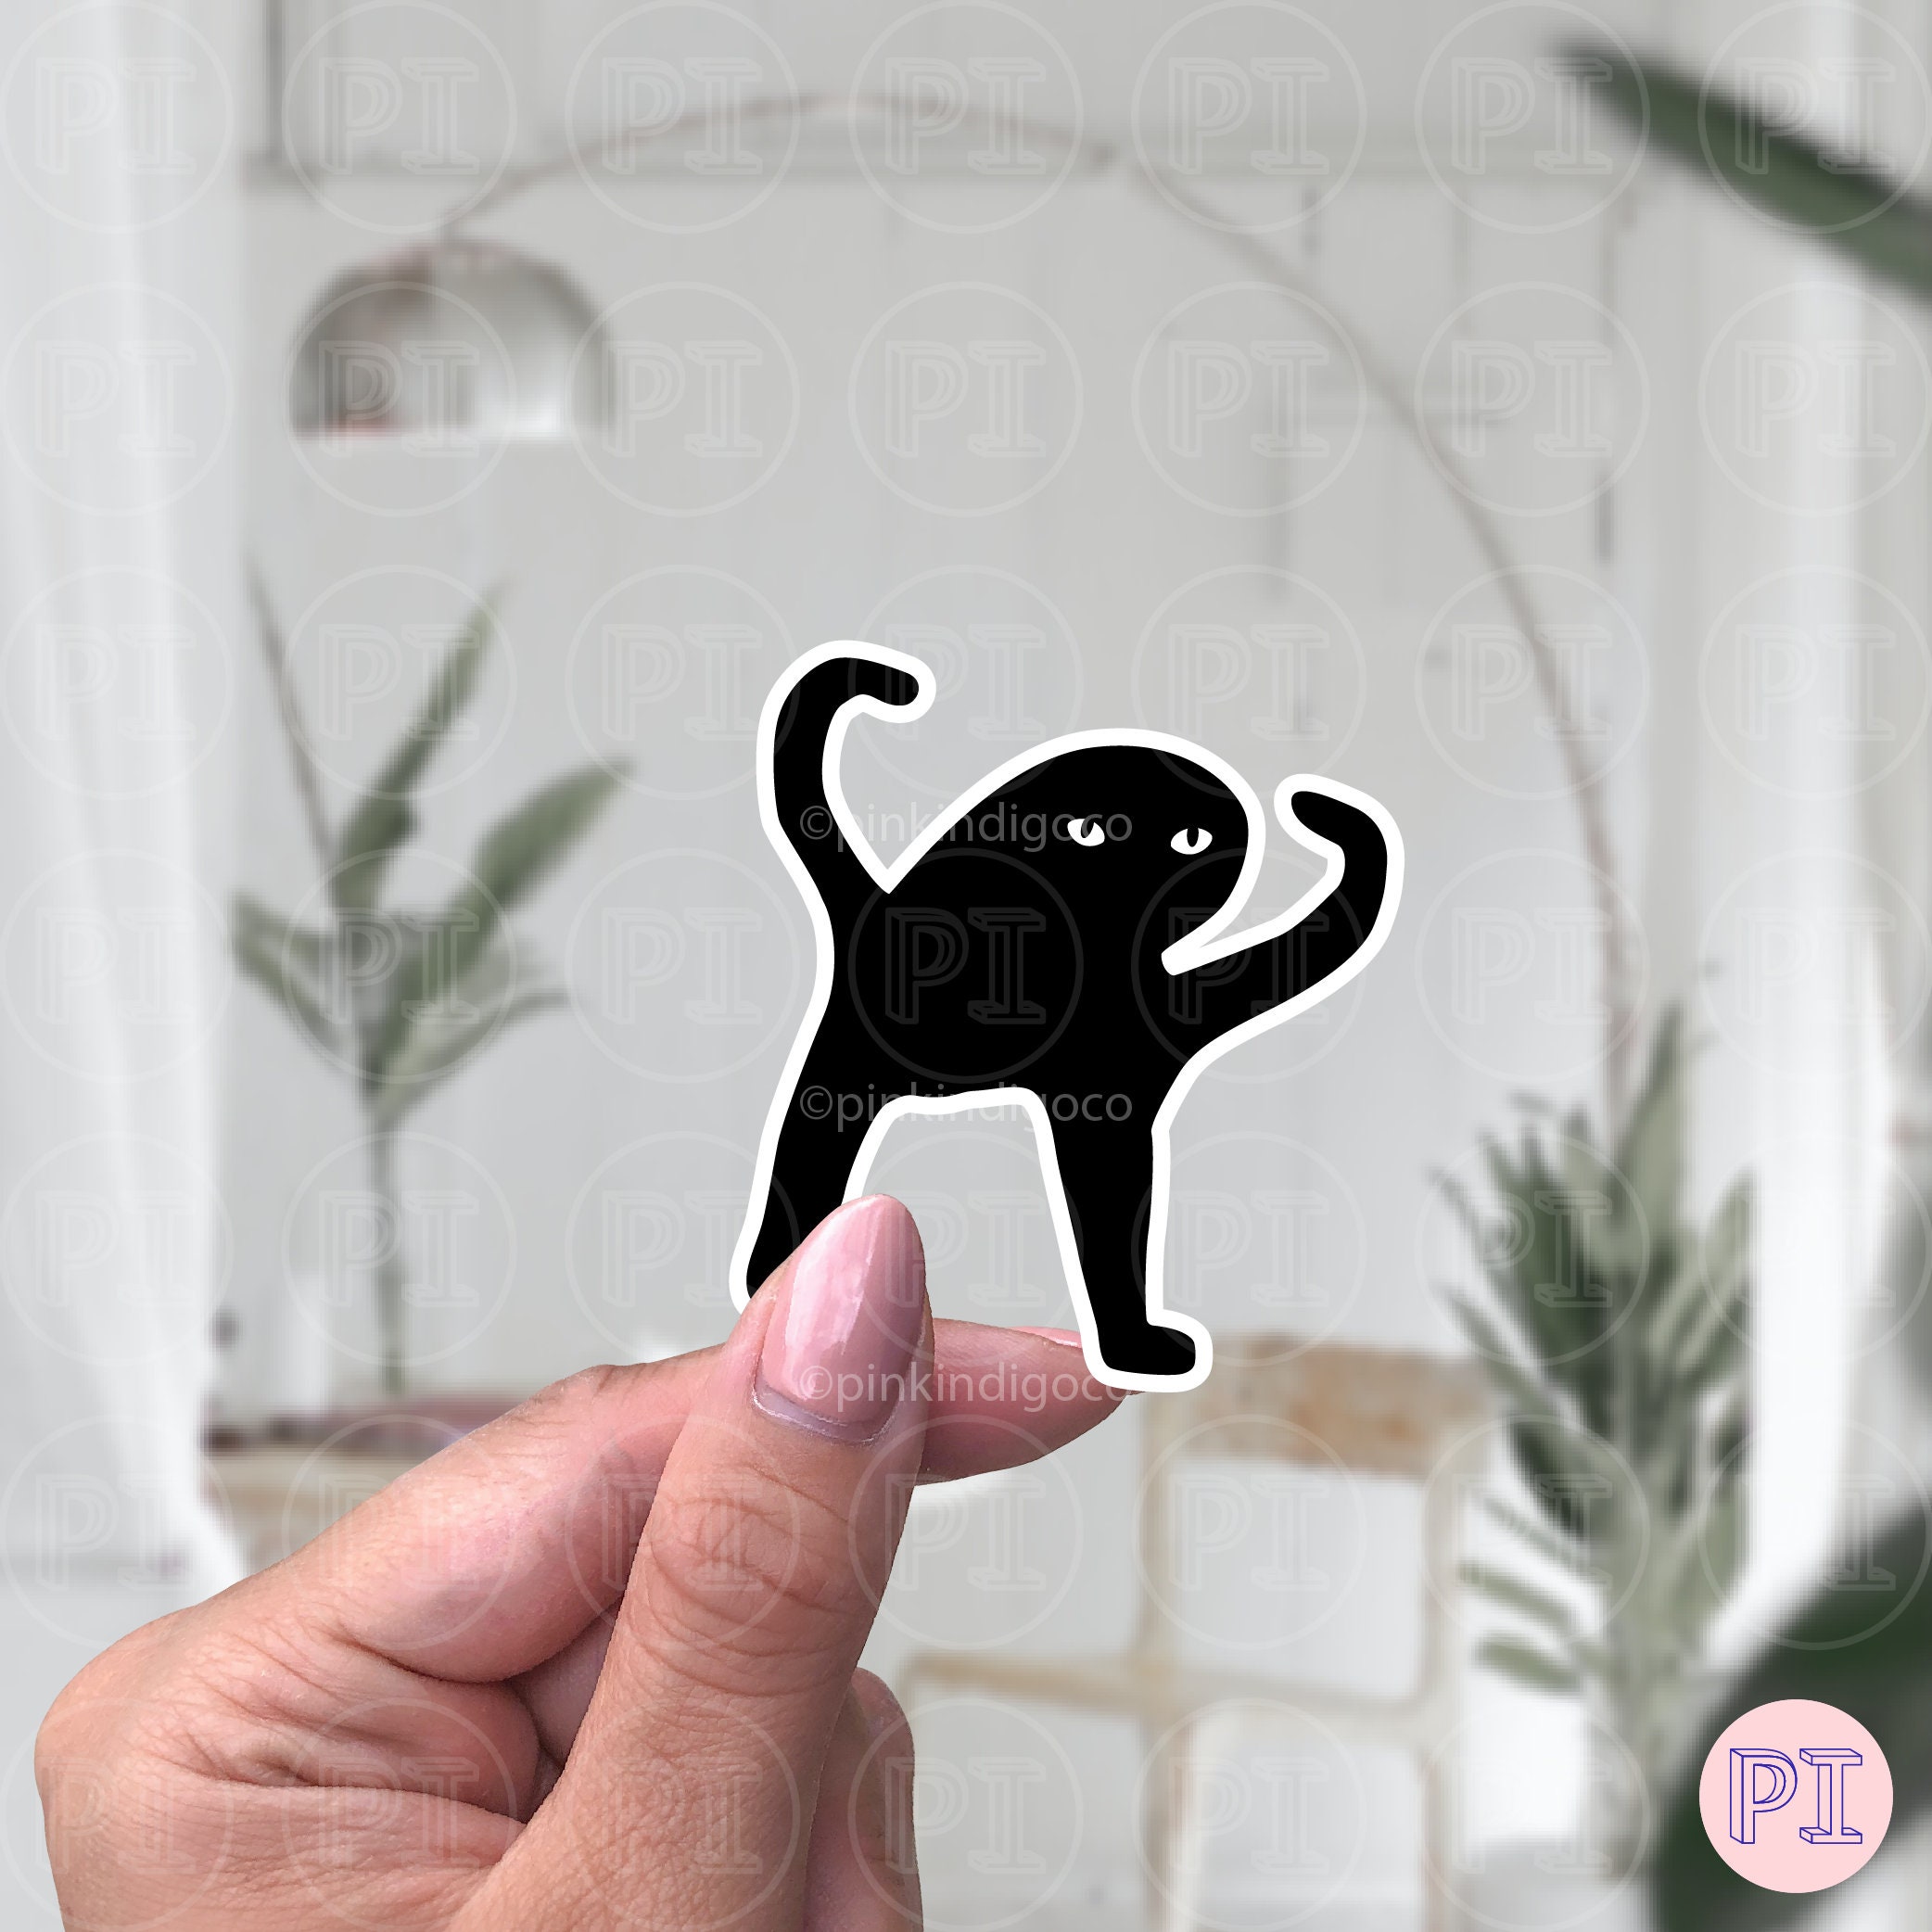 sticker cursedemoji xursed emoji cat sticker by @kitten1y